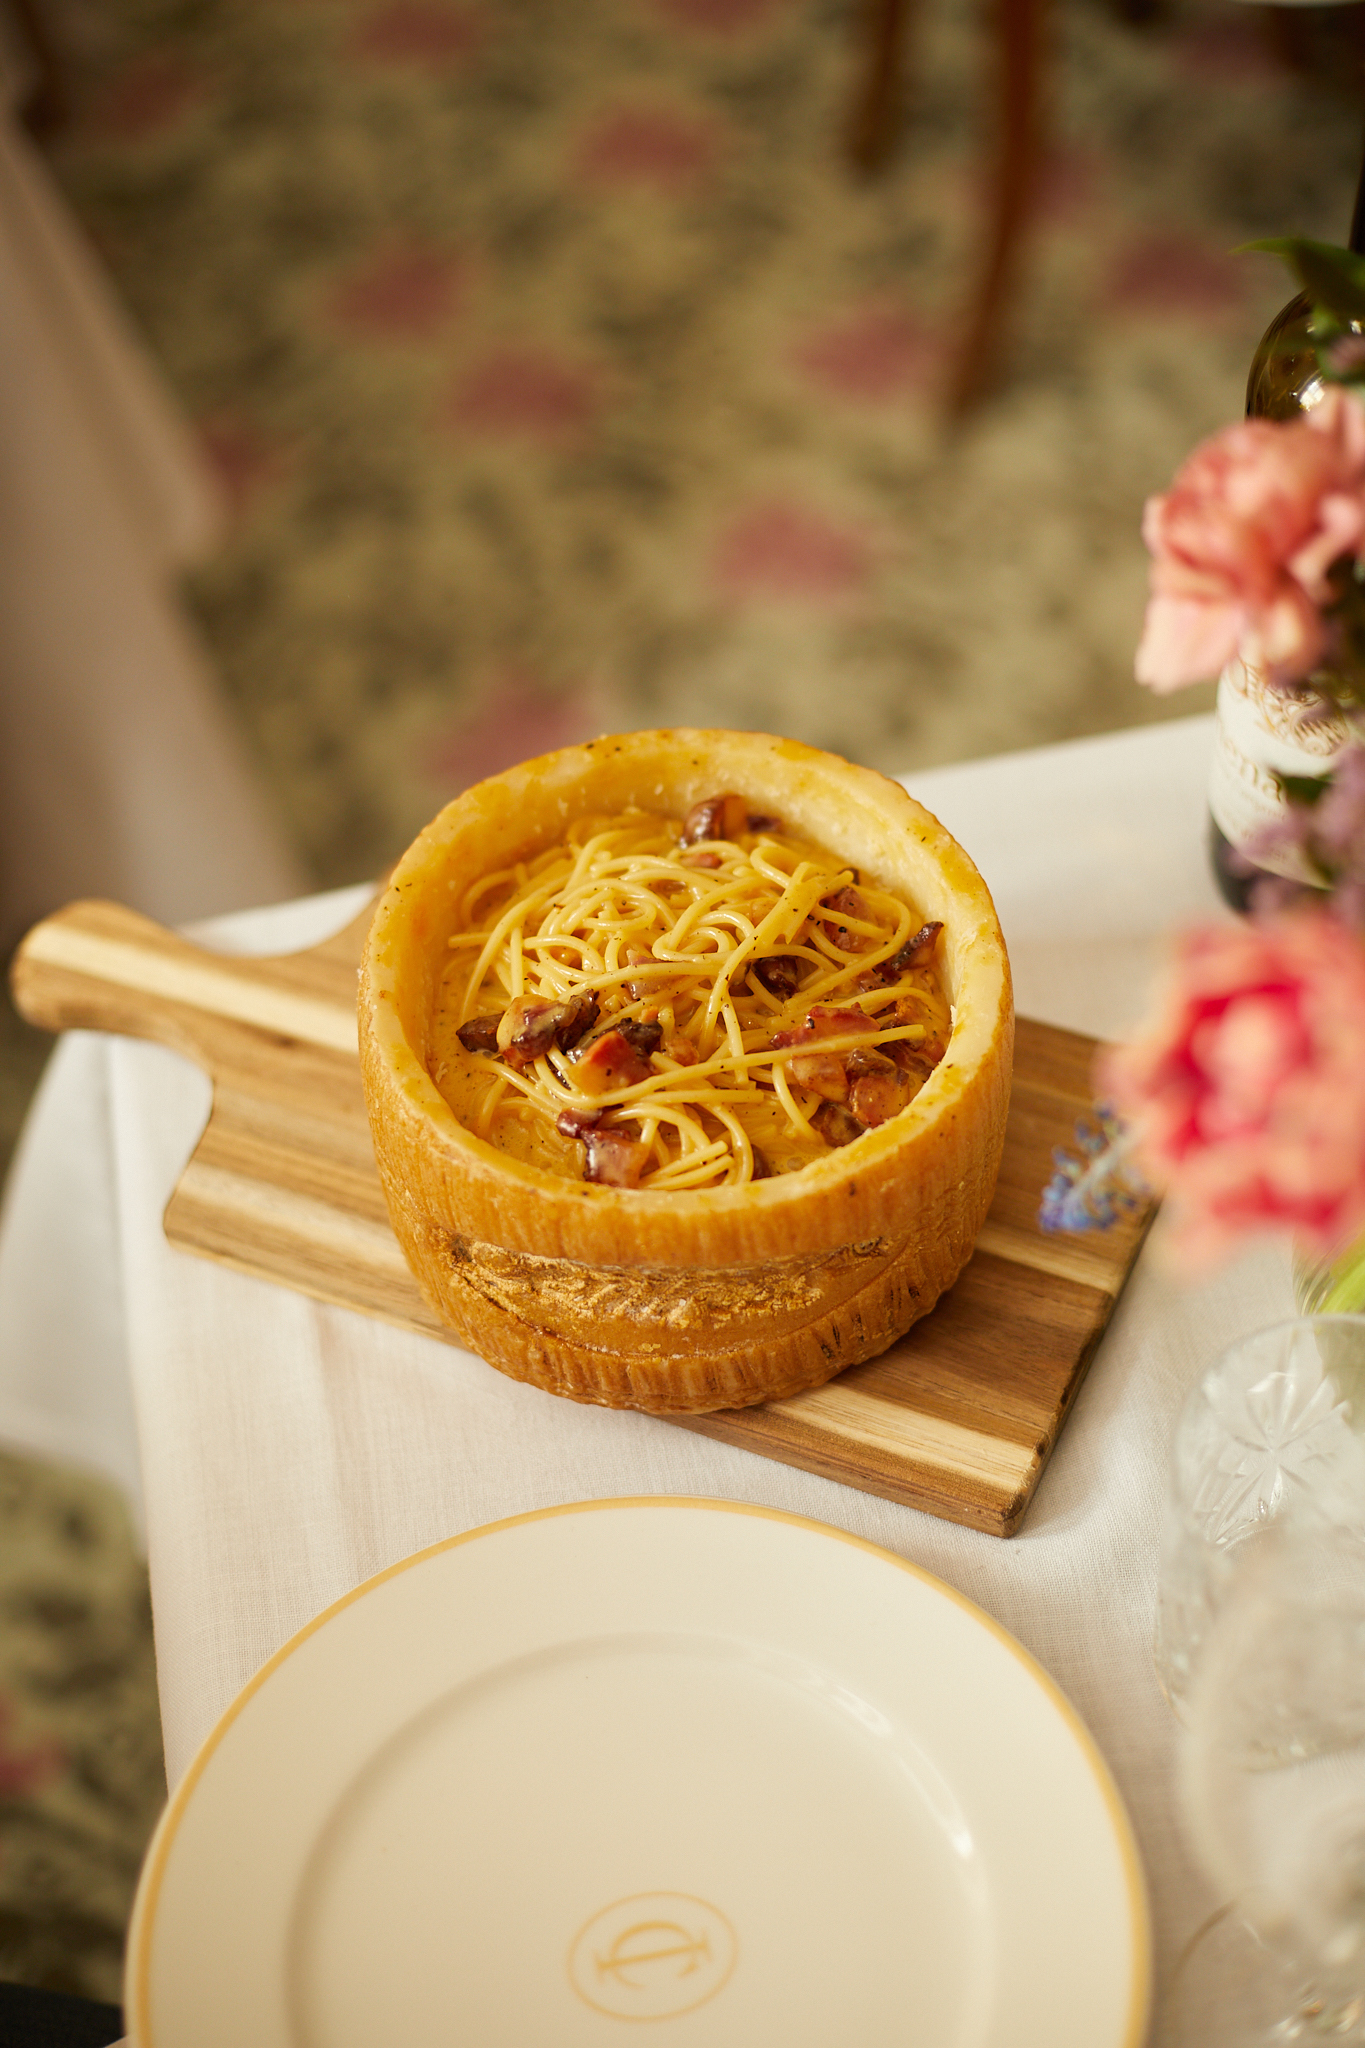 Spaghetti Carbonara at Casa Isabella.